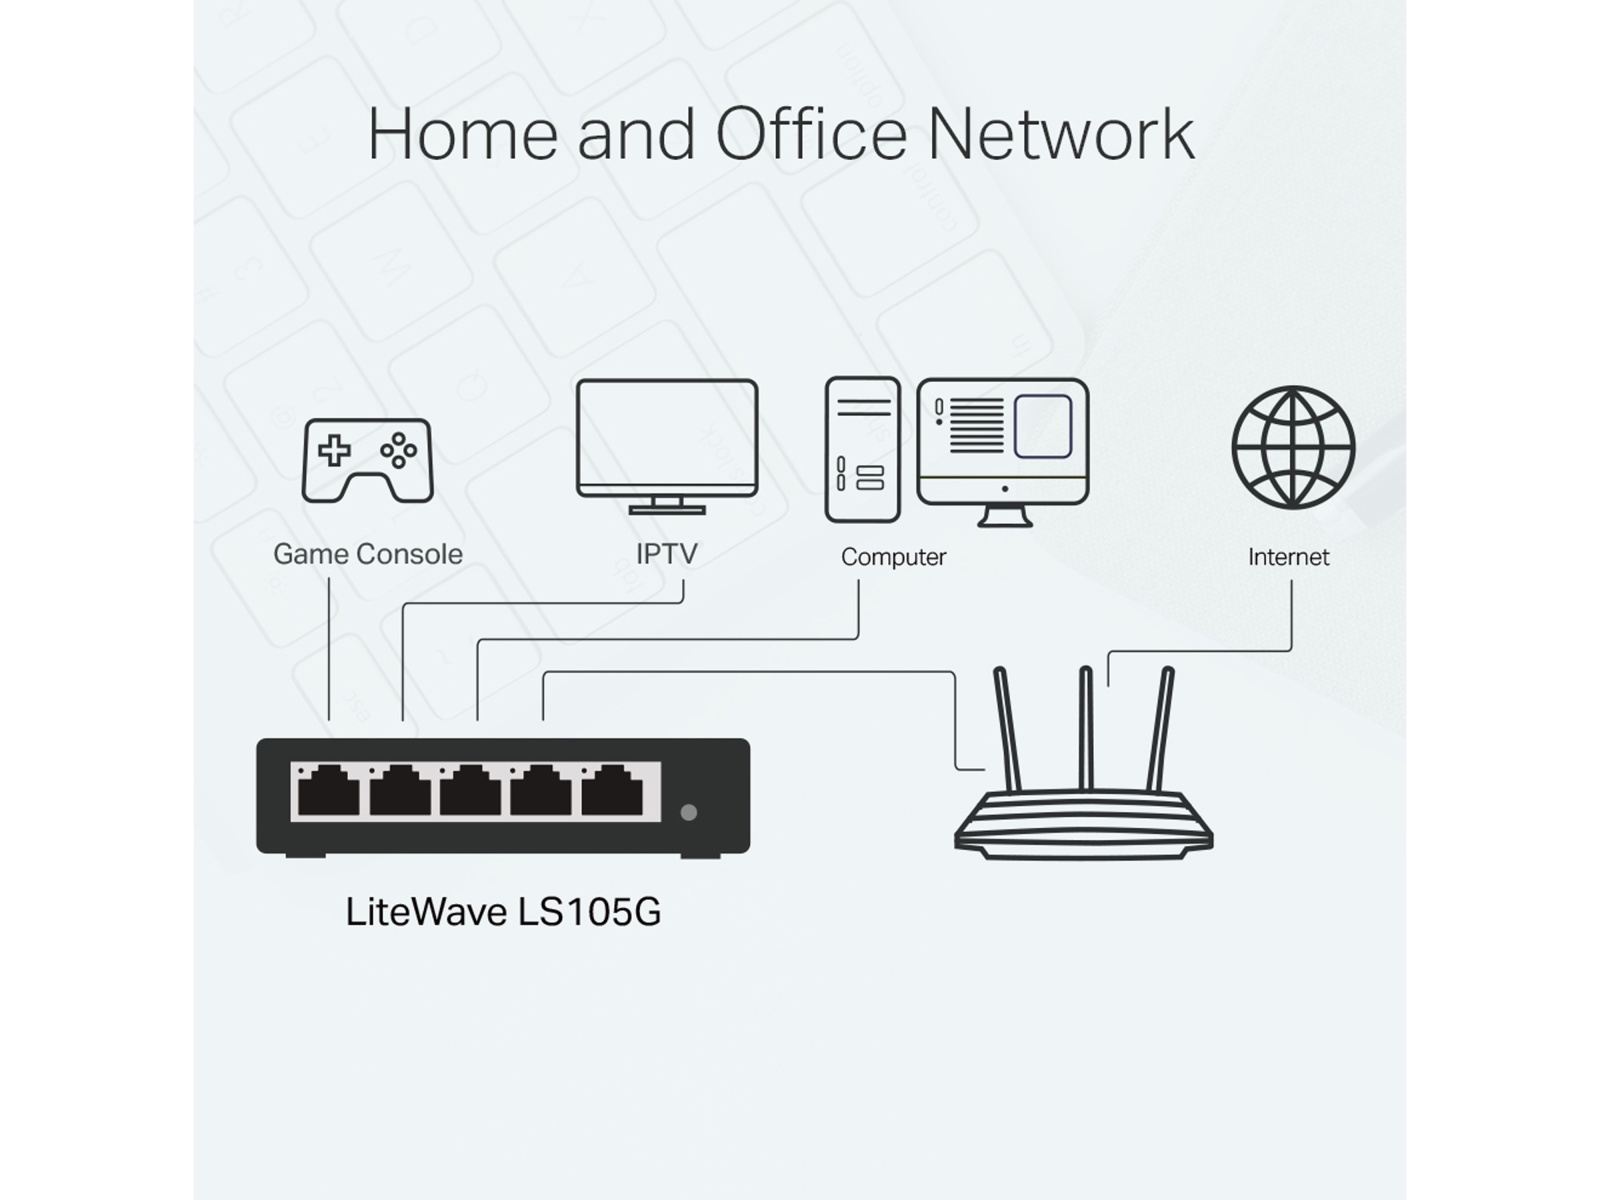 TP-LINK LiteWave Switch LS108G, Gigabit, unmanaged, 5-port, Metall